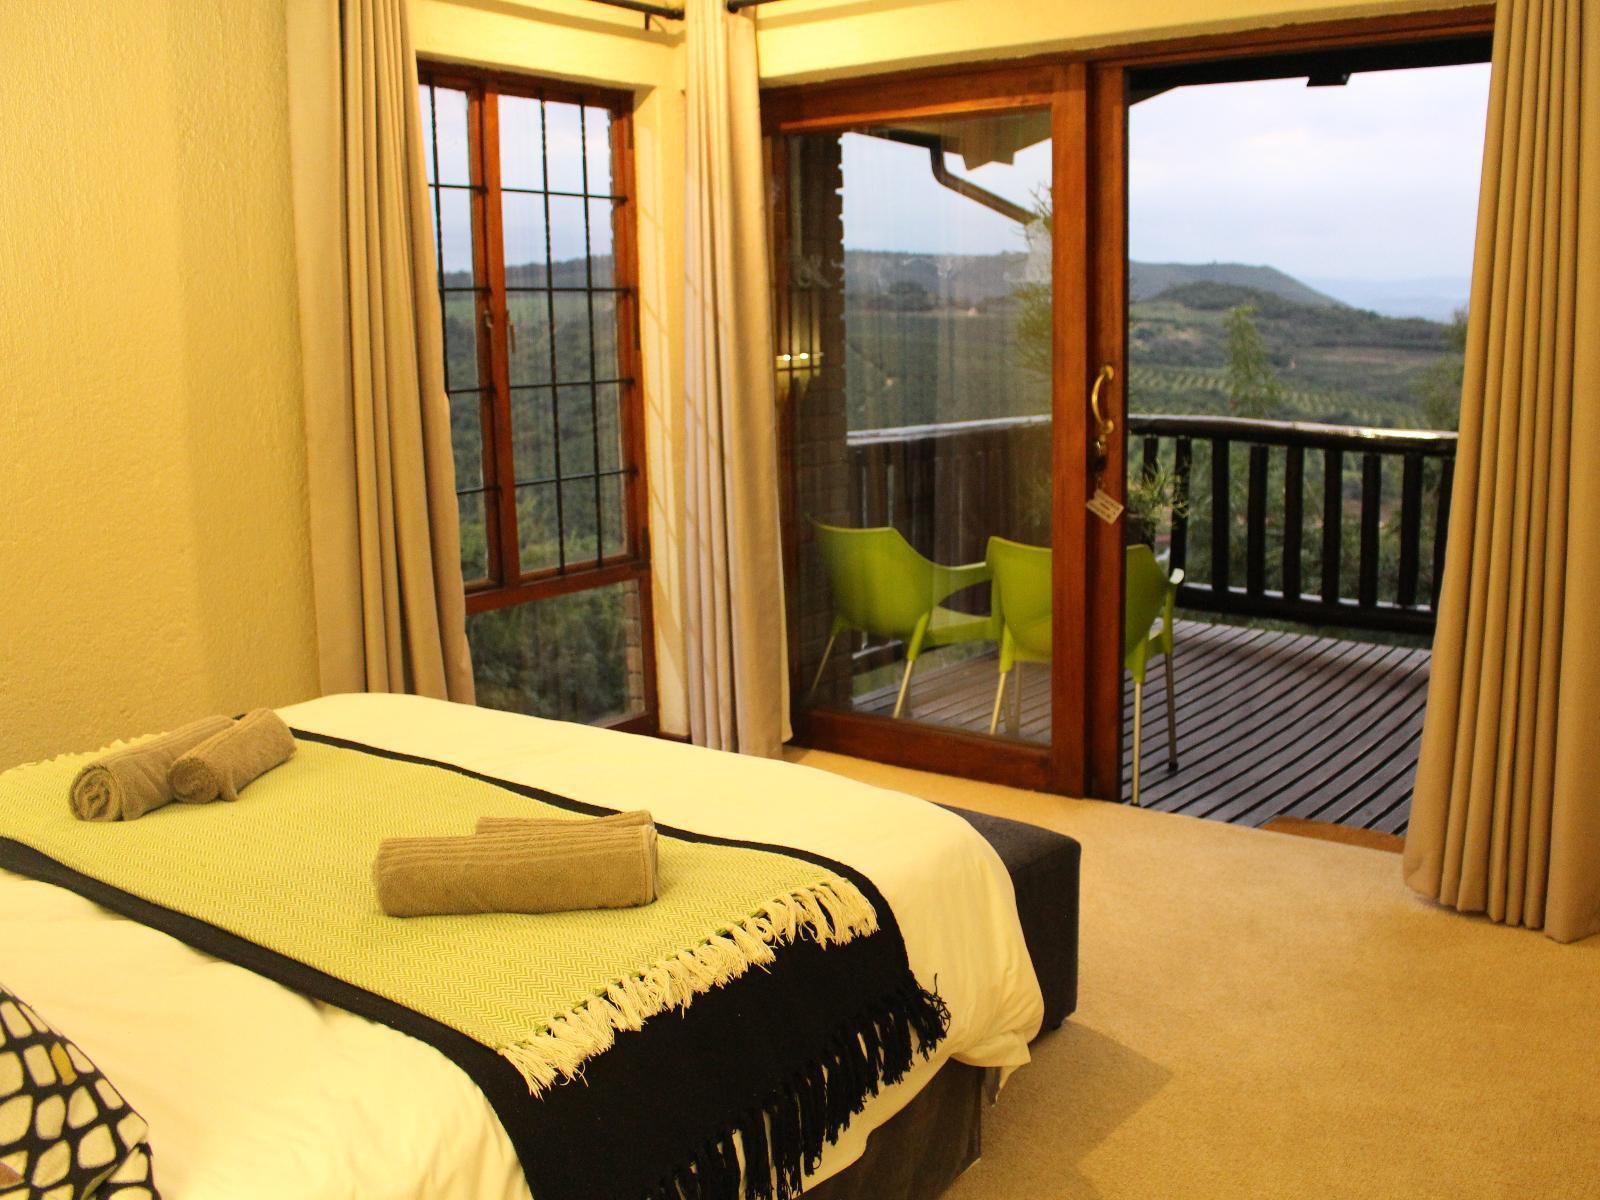 Ulwazi Rock Lodge Hazyview Mpumalanga South Africa Bedroom